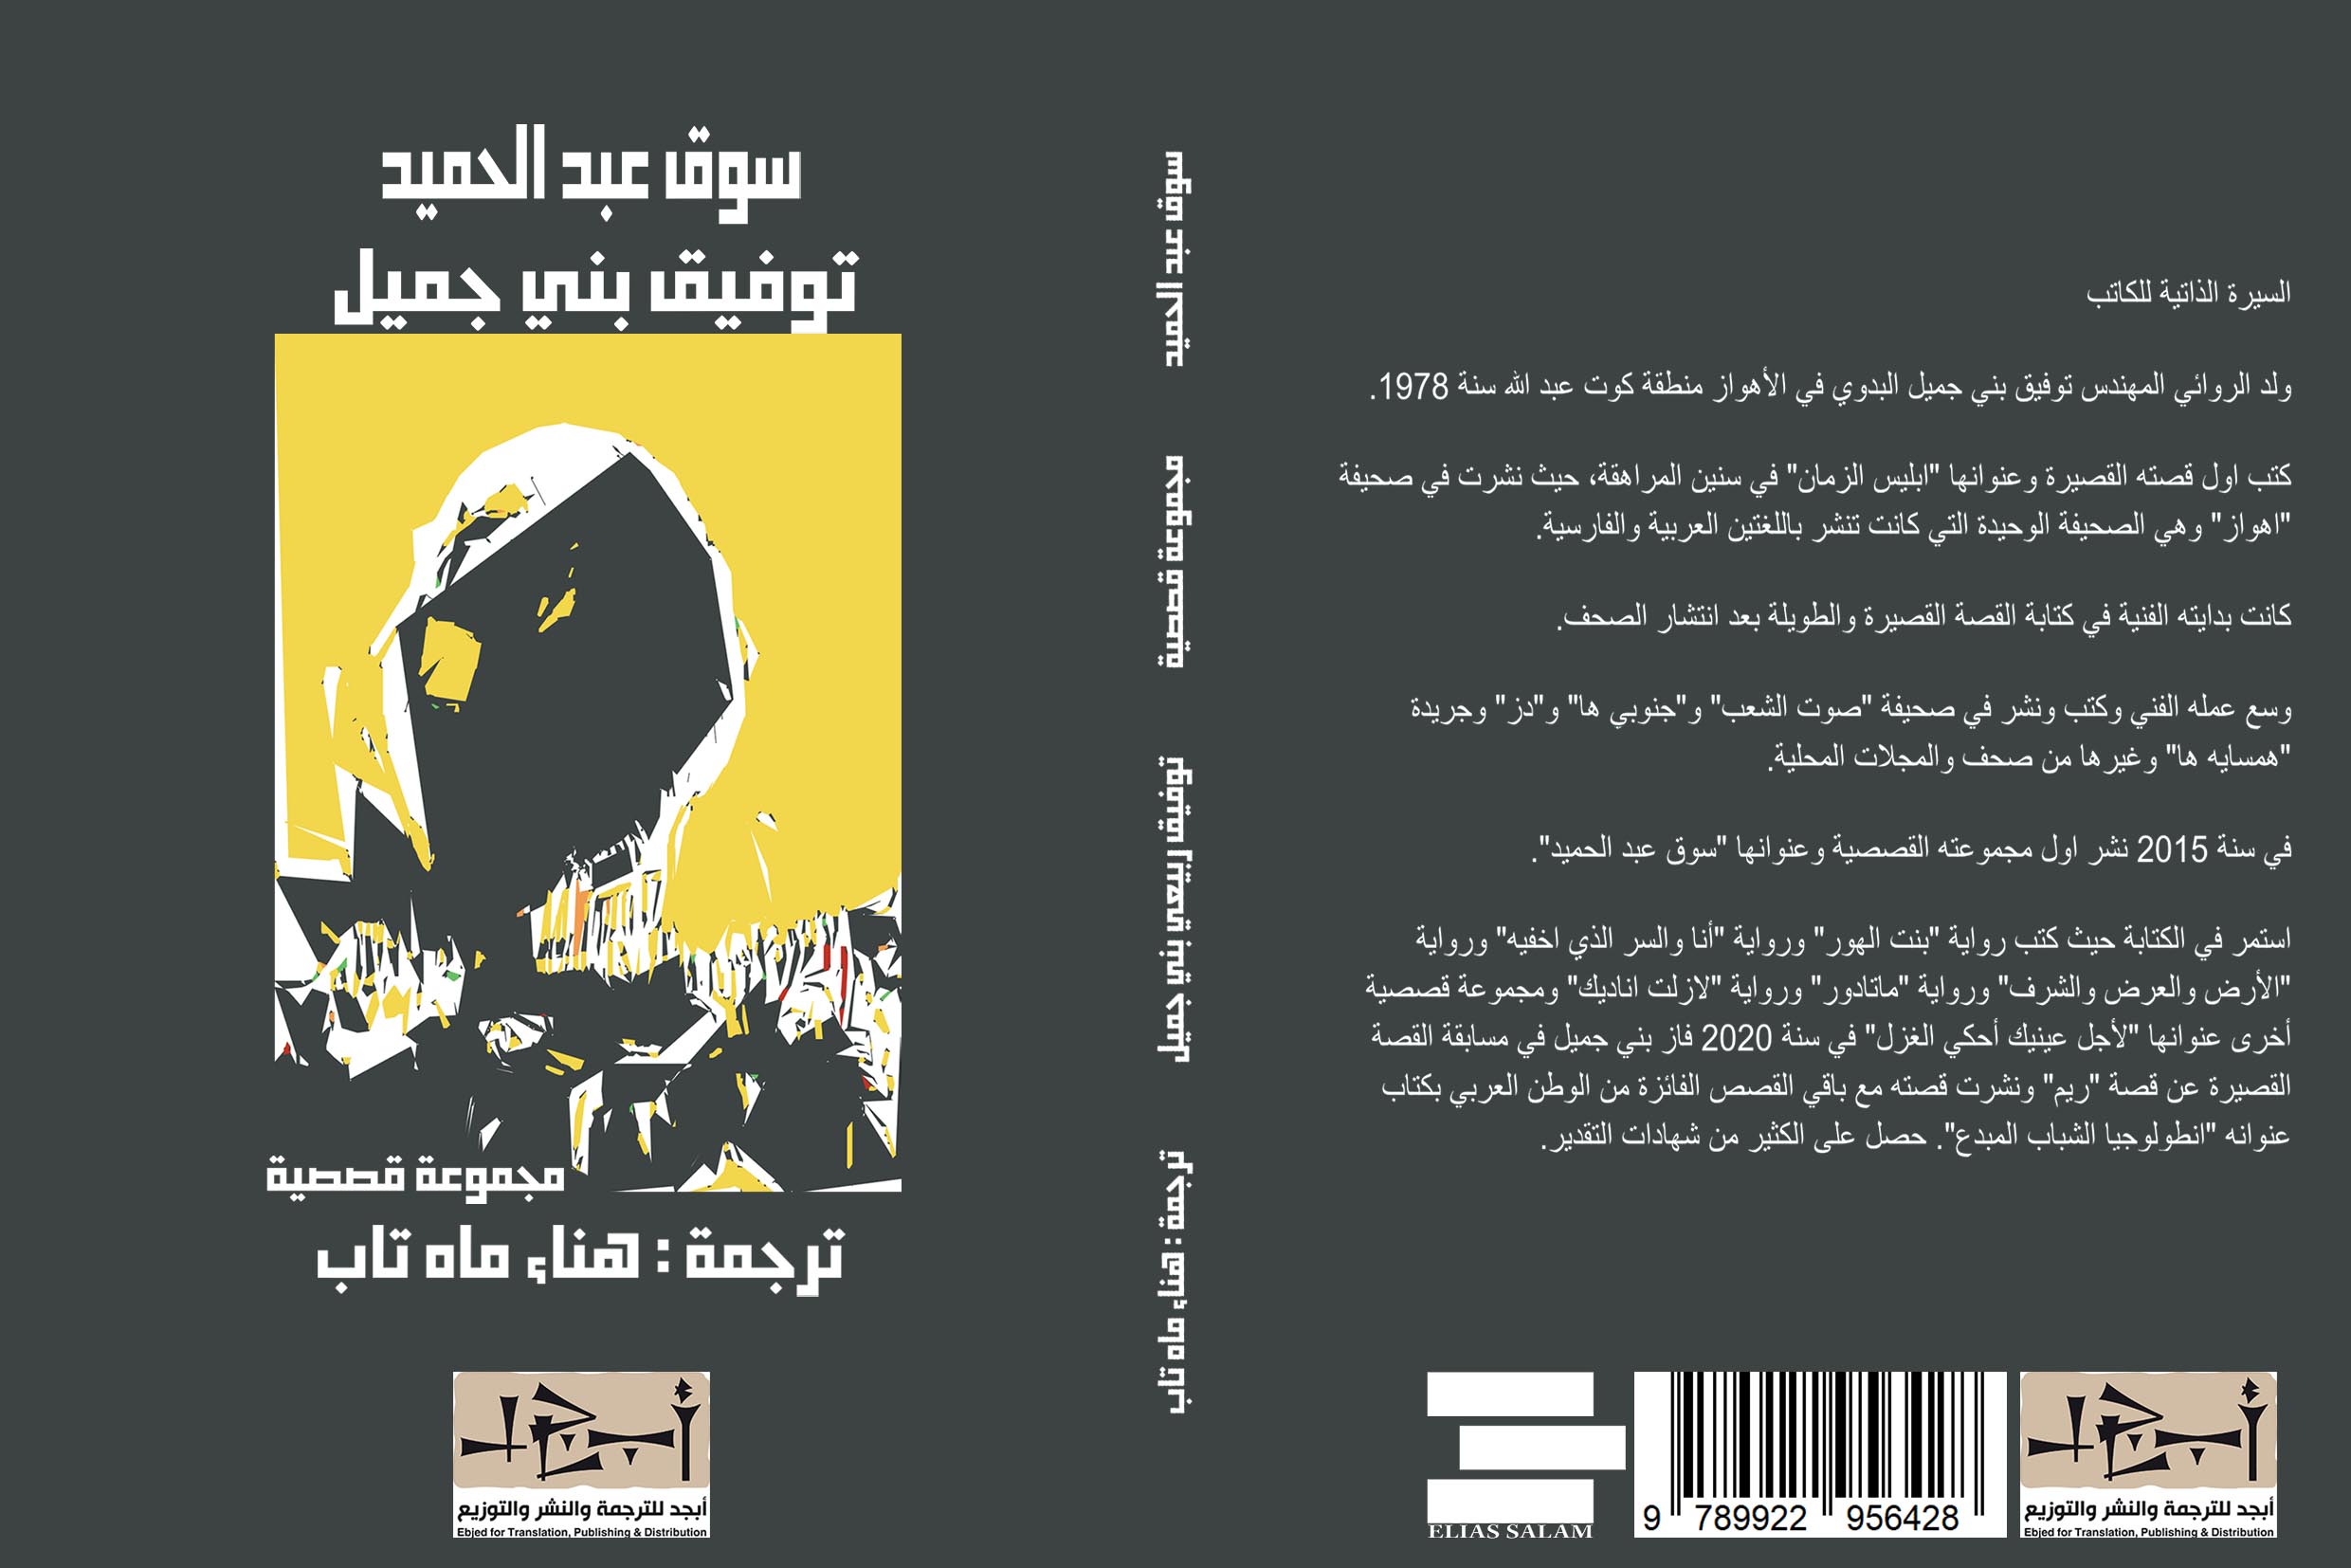 المجموعة القصصية (سوق عبد الحميد) - الكاتب توفيق بني جميل - المترجمة هناء مهتاب